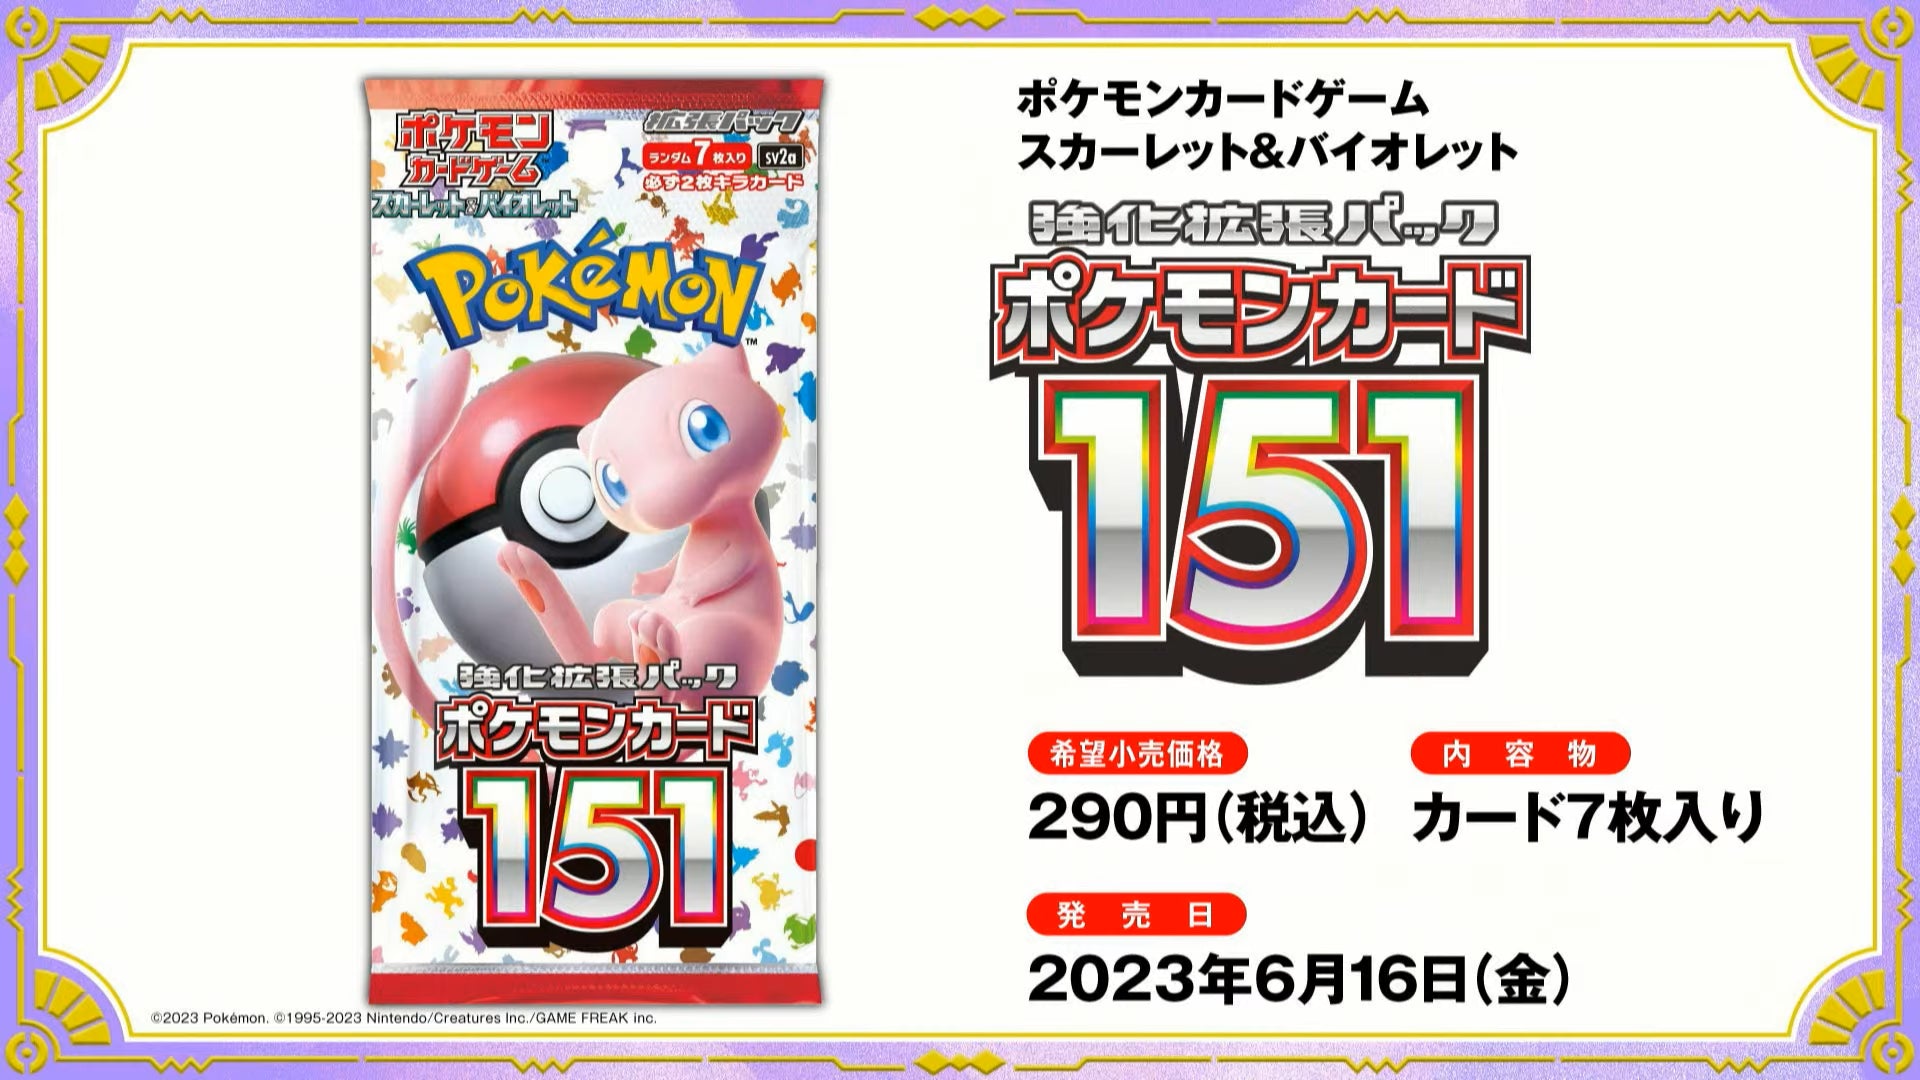 Japanese Pokémon - SV2a - Scarlet & Violet: Pokémon Card 151 - Booster Boxes & Packs